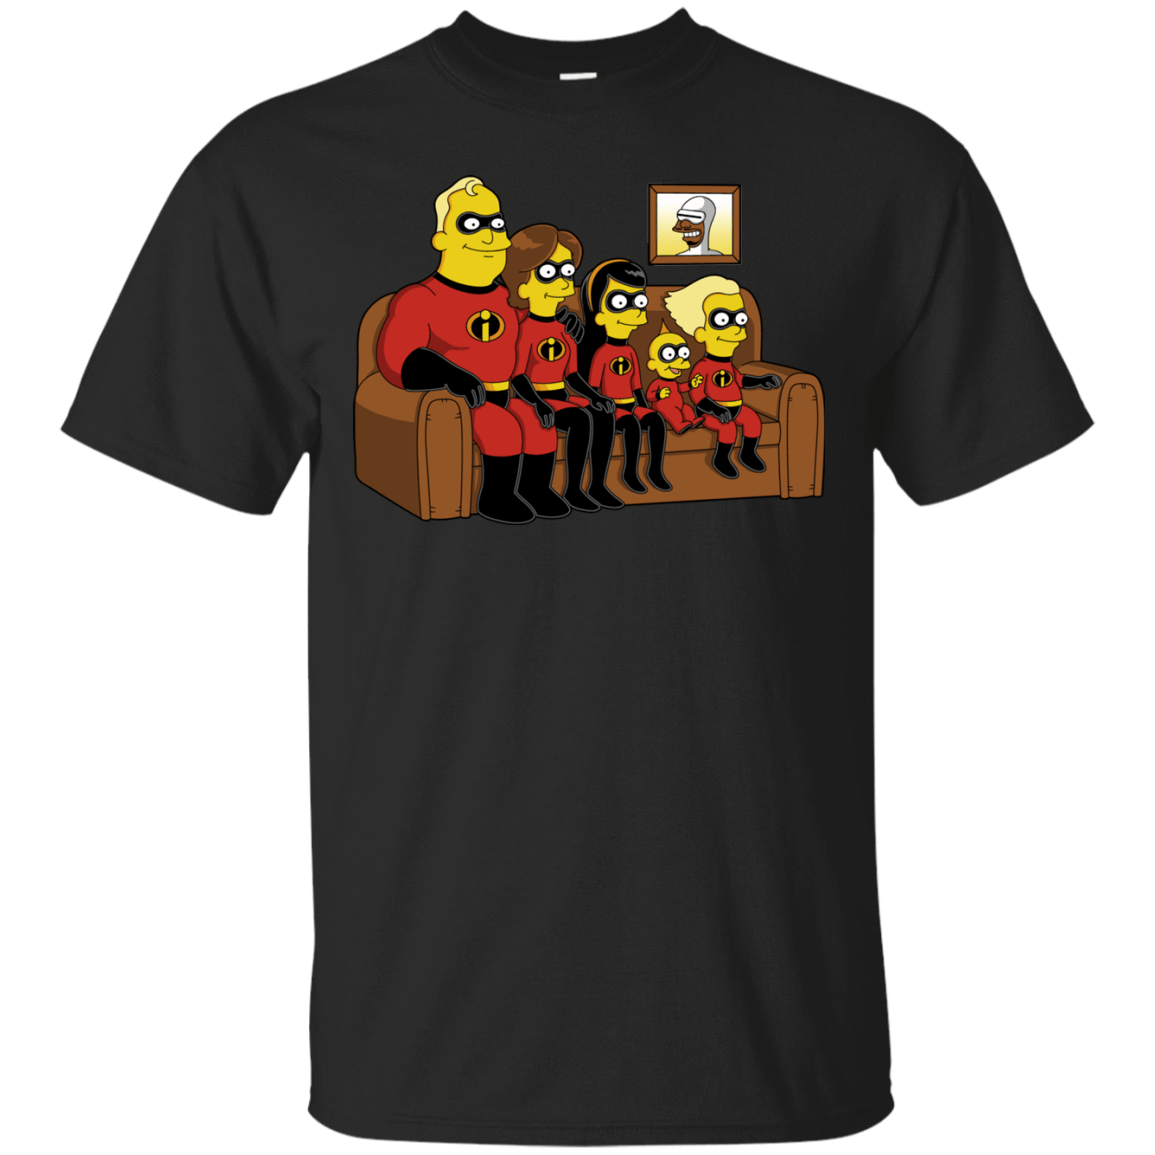 T-Shirts Black / S Super Family T-Shirt